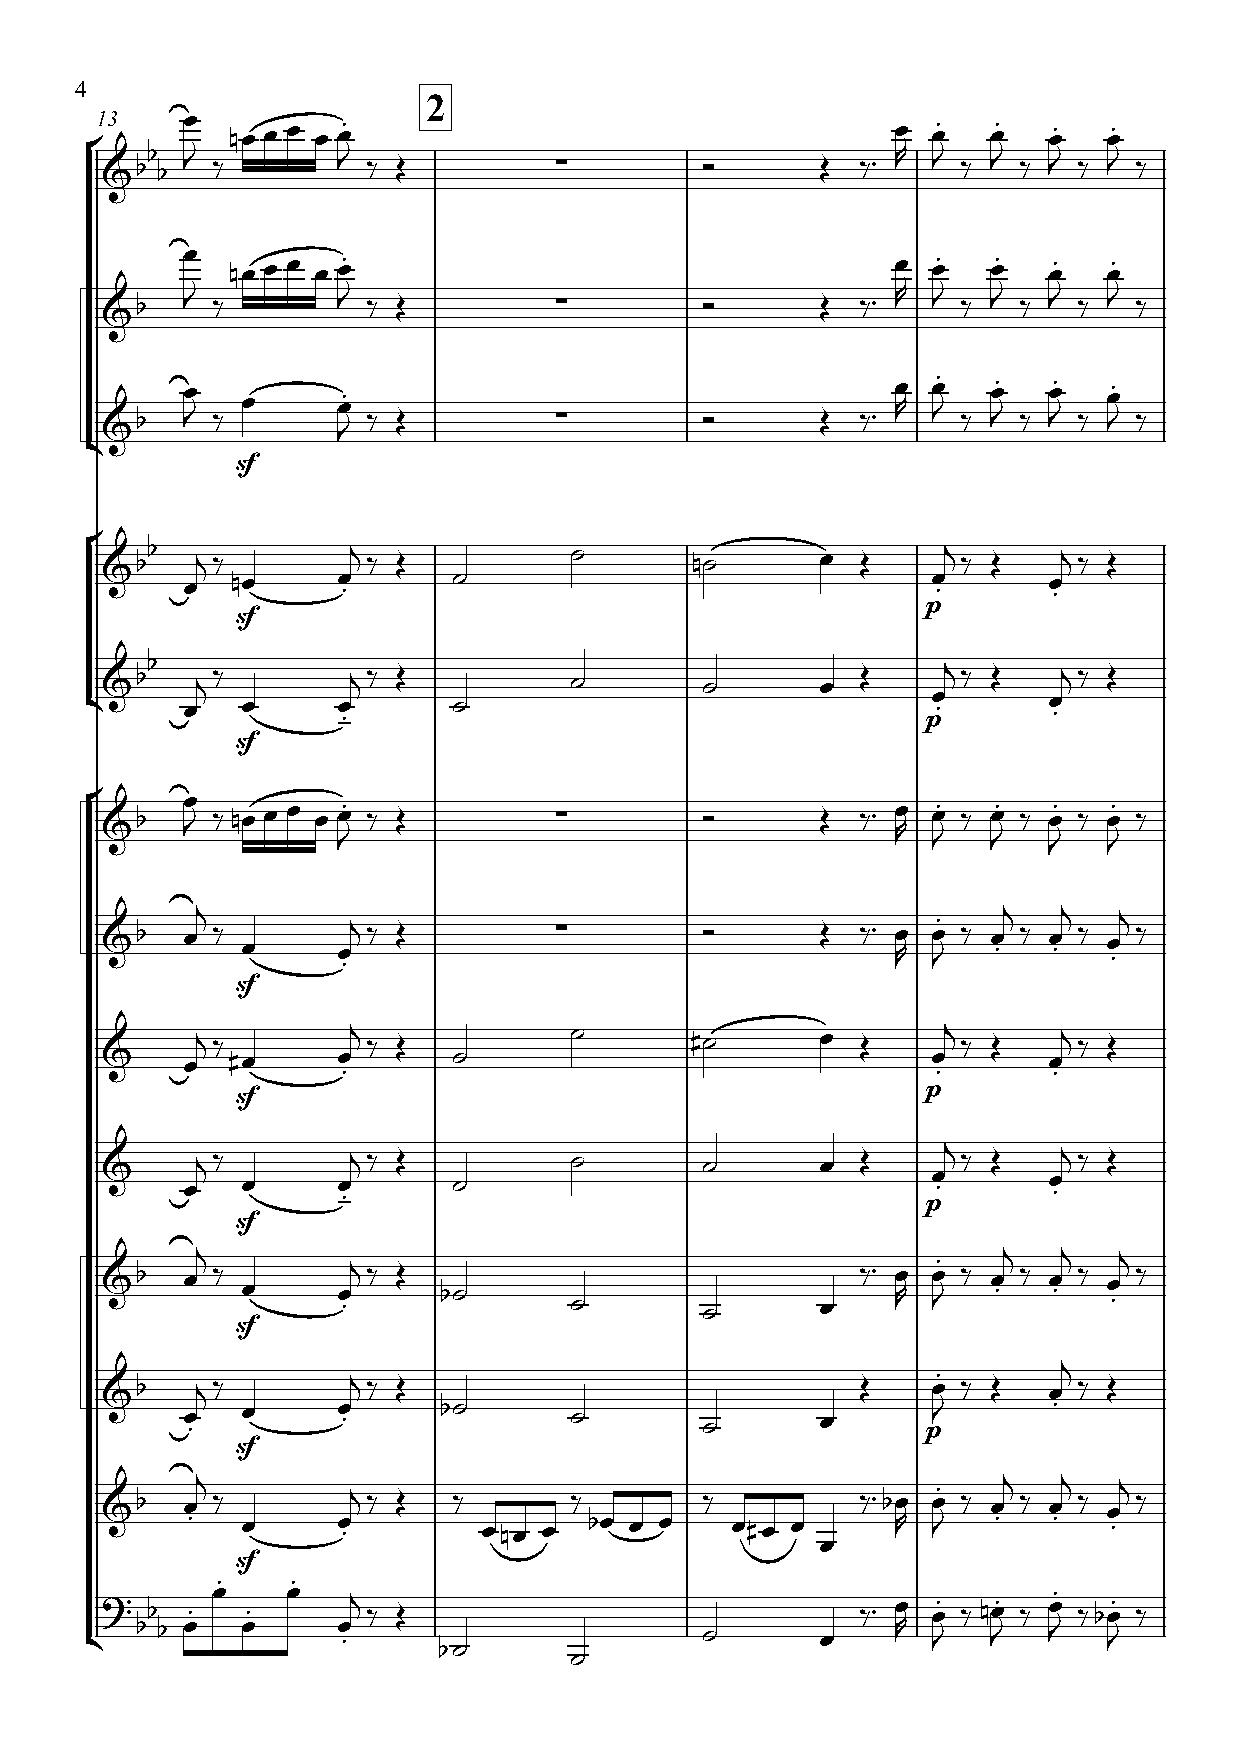 Сонатина В.Моцарт - партитура для духового оркестра, инструментовка Андриянова В.К.